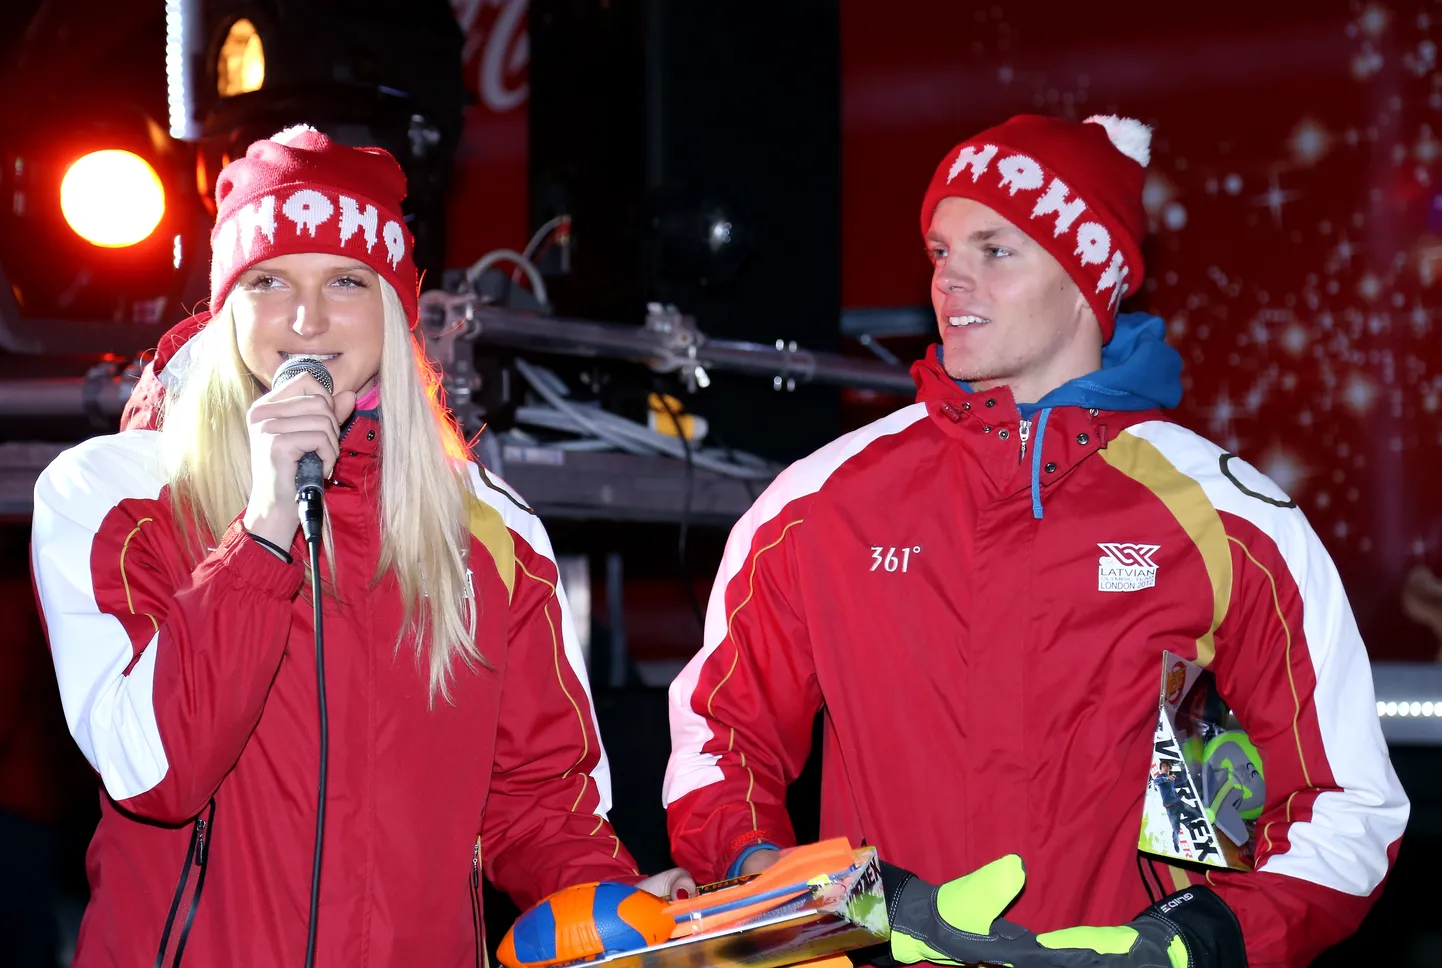 Latvijas Olimpiskās komandas pārstāvji, šķepmetēji Līna Mūze un Zigismunds Sirmais piedalās labdarības projekta "Ziemassvētku karavānas" atklāšanas pasākumā pie Brīvības pieminekļa.